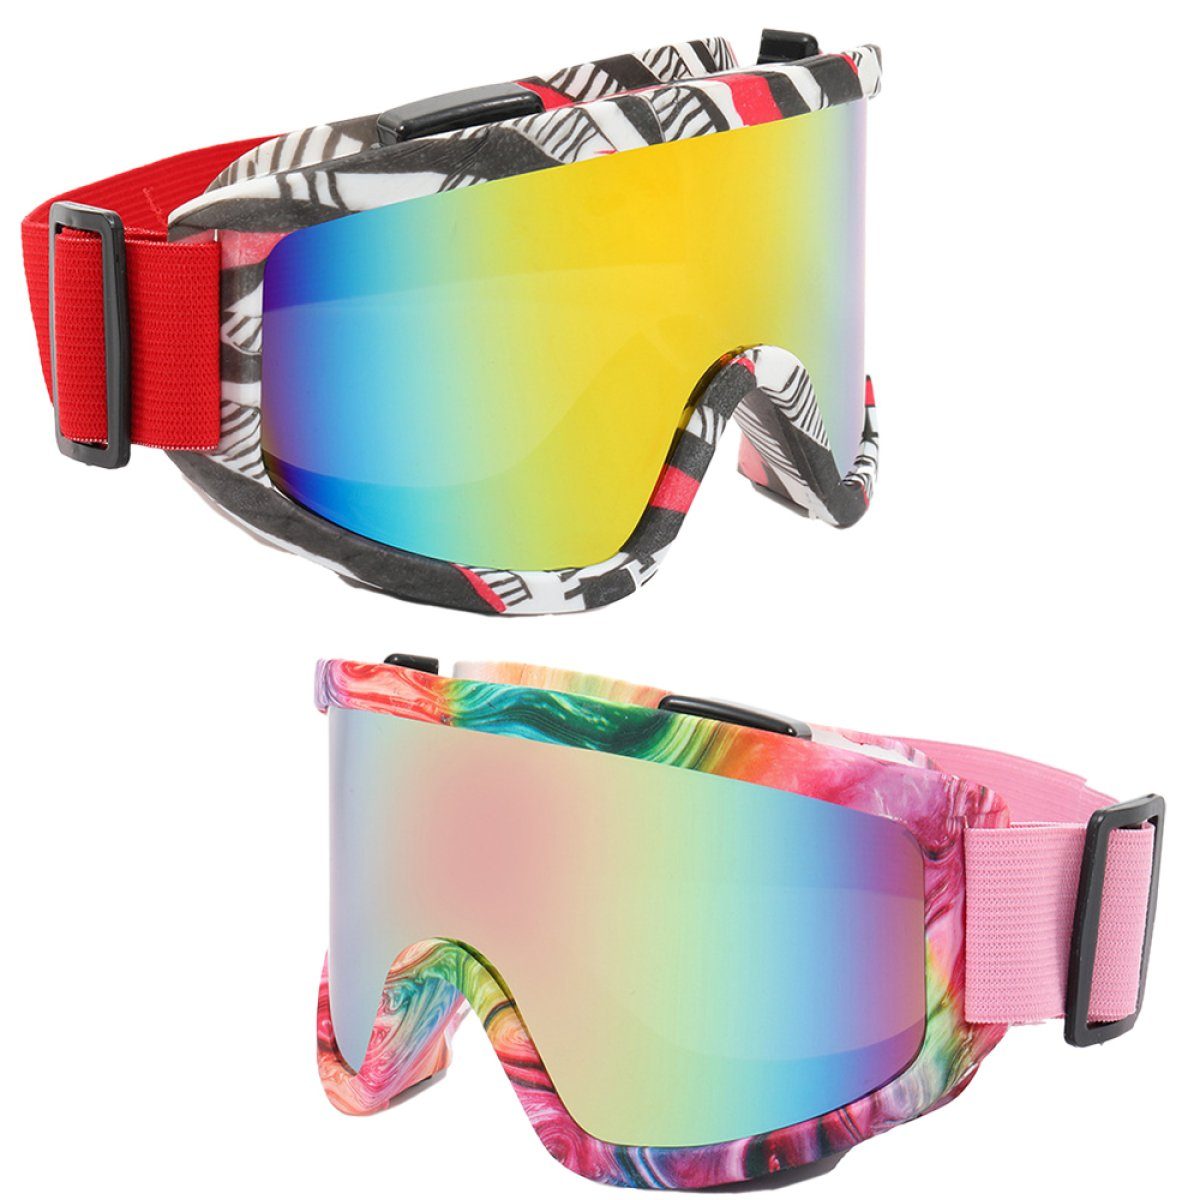 AugenschutzUV-Schutz Herren,UV-Schutz Damen ZmdecQna Beschlagen, Unisex für Multicolour3 für Skibrille Reduziert das skibrille und brillenträger,